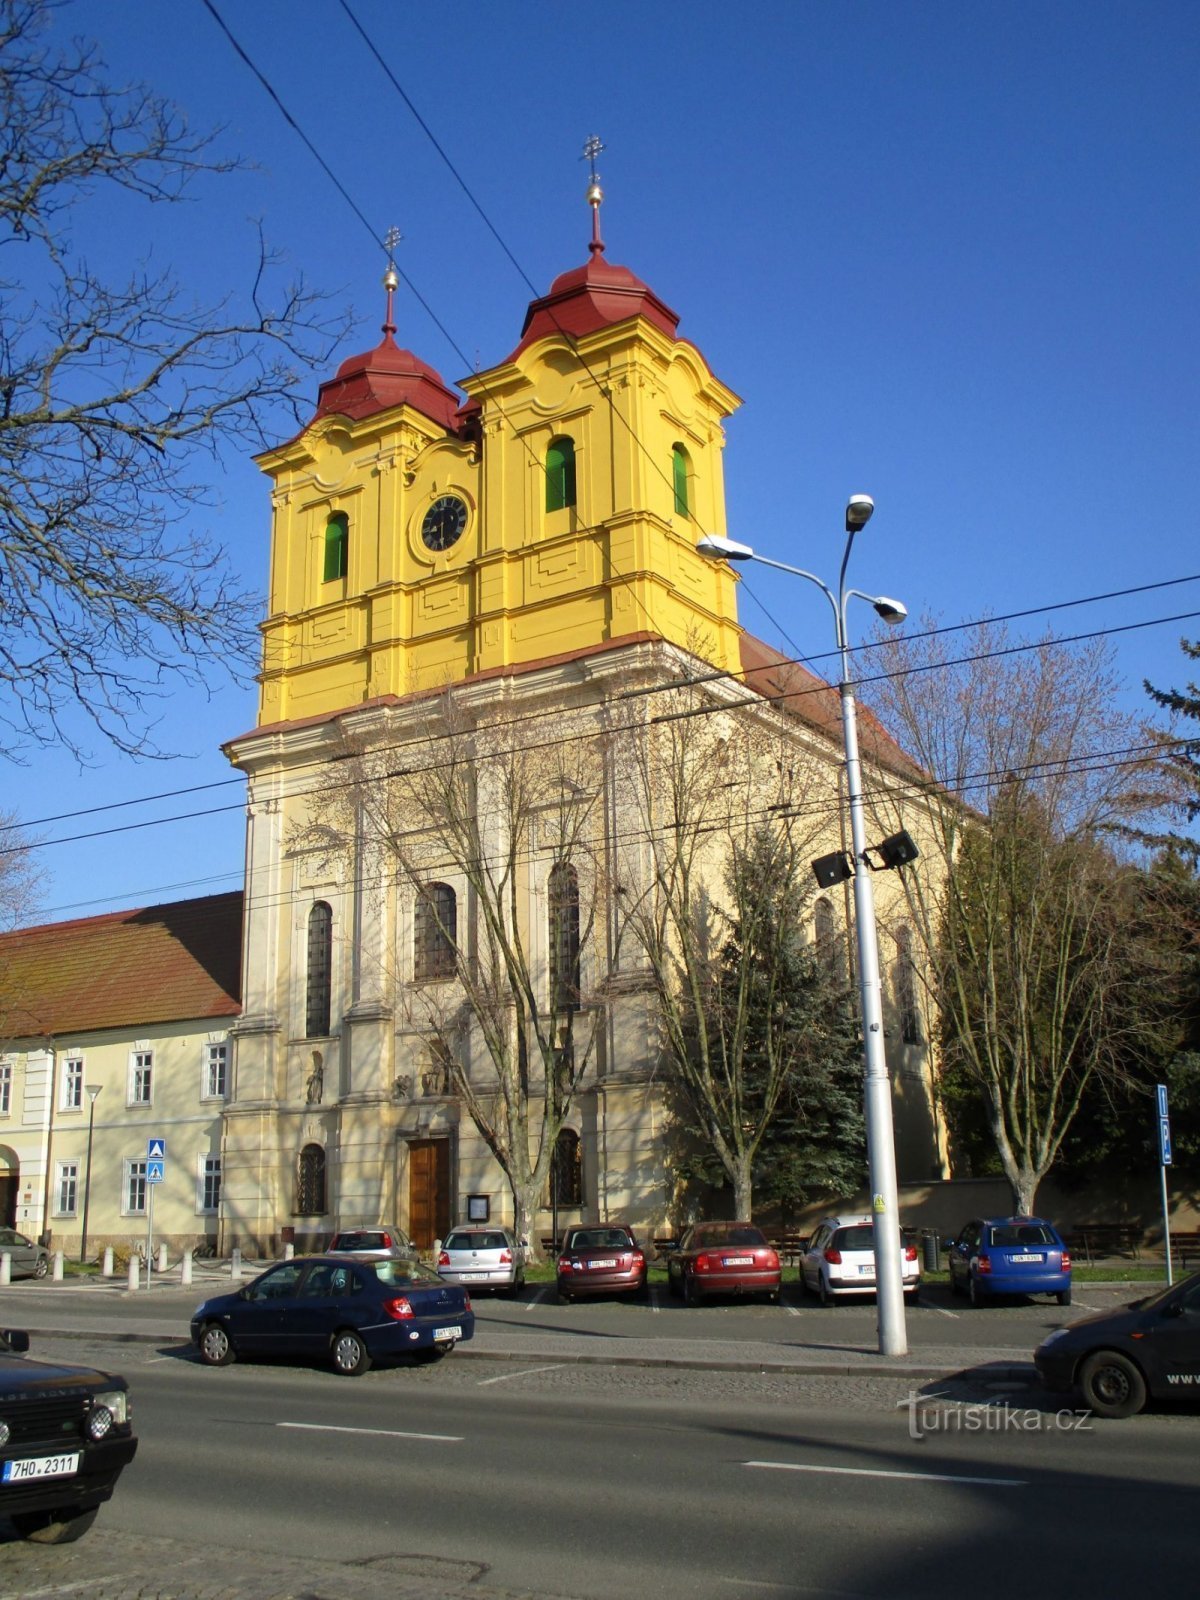 Pyhän kirkko Anny (Hradec Králové, 5.4.2020. huhtikuuta XNUMX)